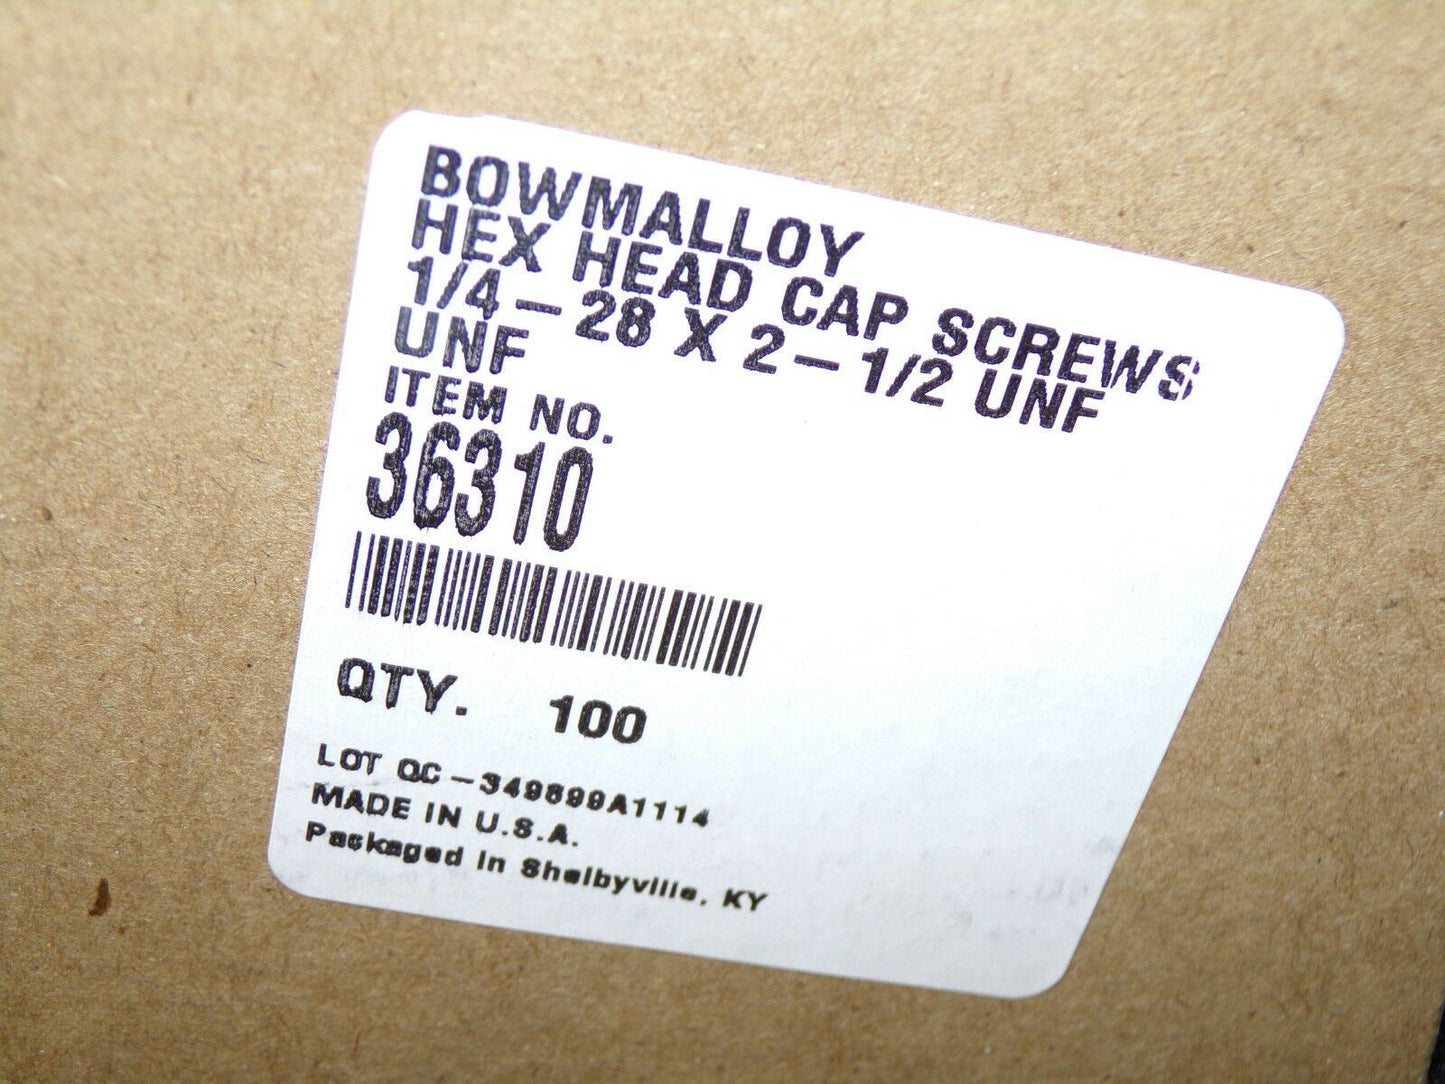 1/4"-28 x 2-1/2" UNF Bowmalloy Hex Head Cap Screw Grade 9 QTY-100 36310 (183379377144-Y29)